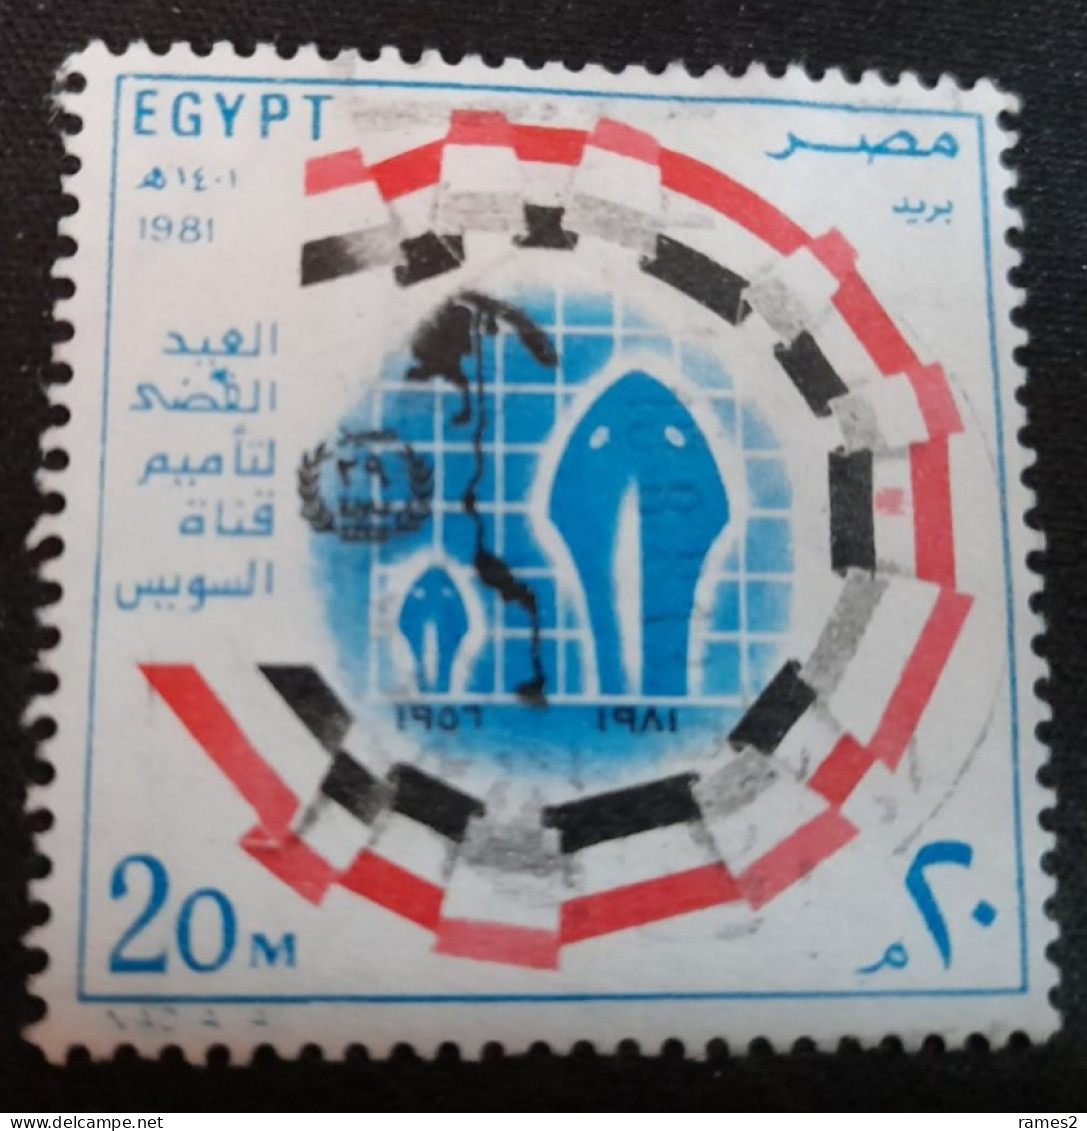 Egypte > 1953-.... République > 1980-89 > Oblitérés N° 1147 - Usados